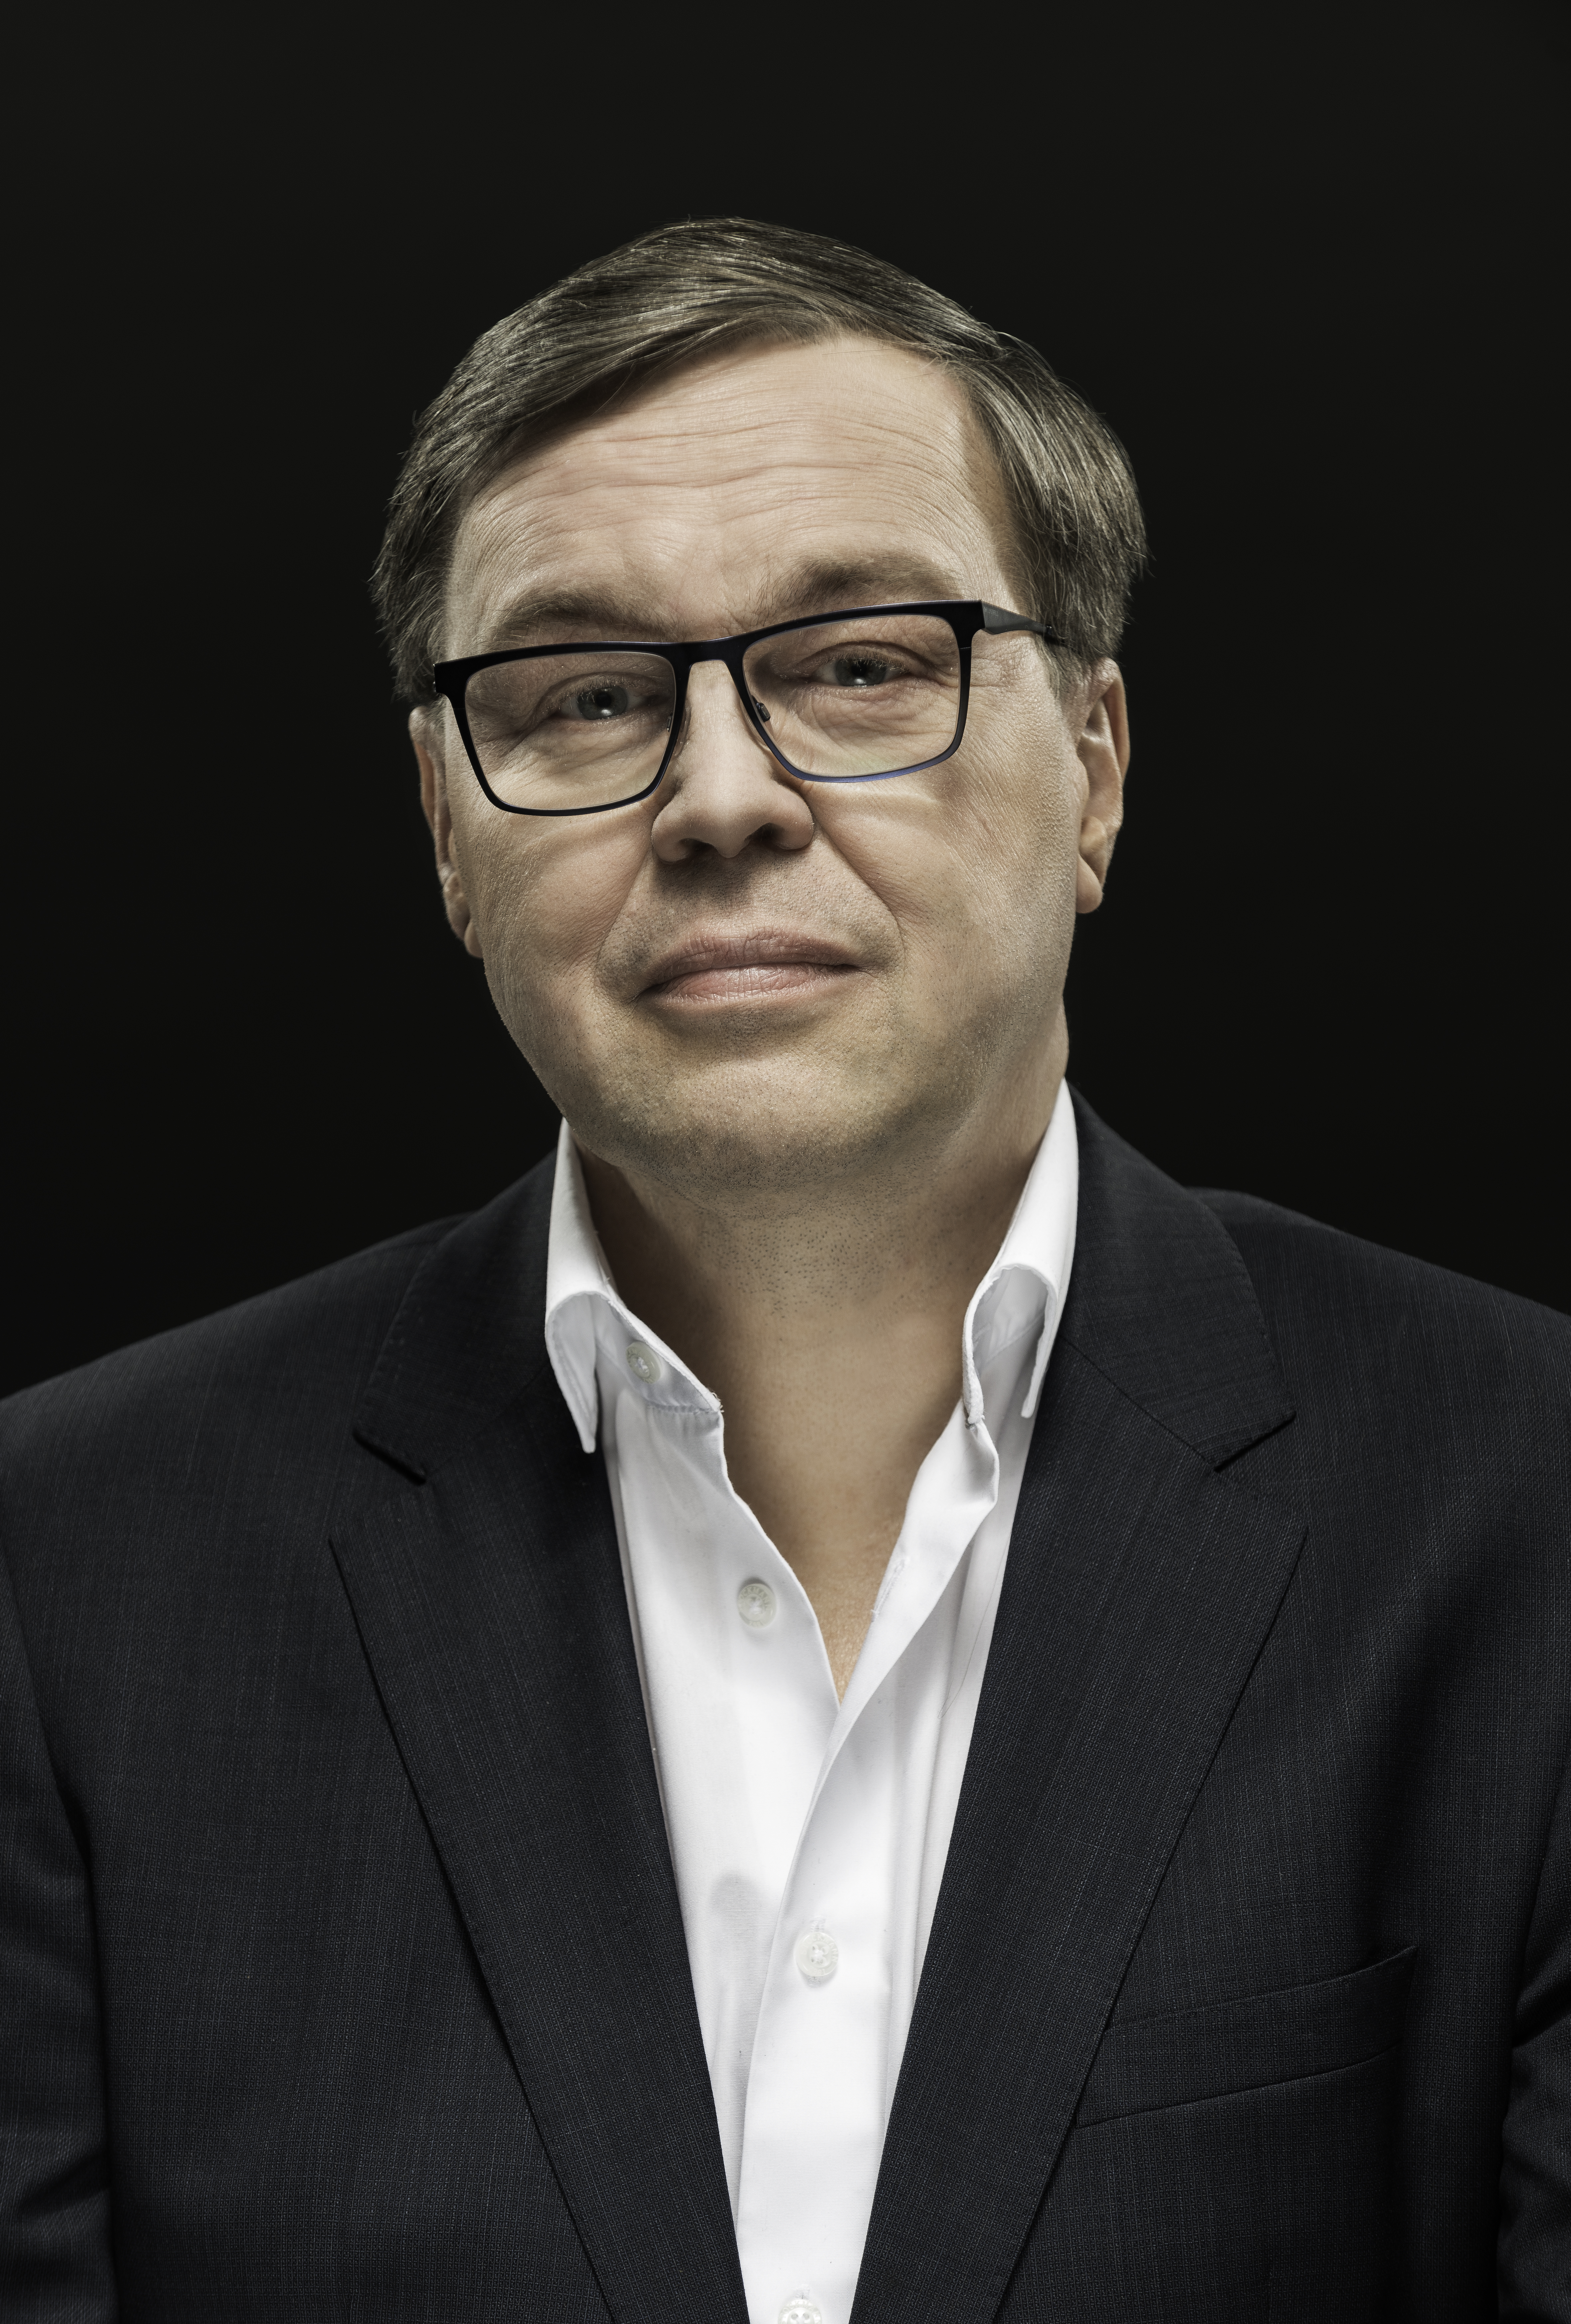 Image of Mikko Setälä